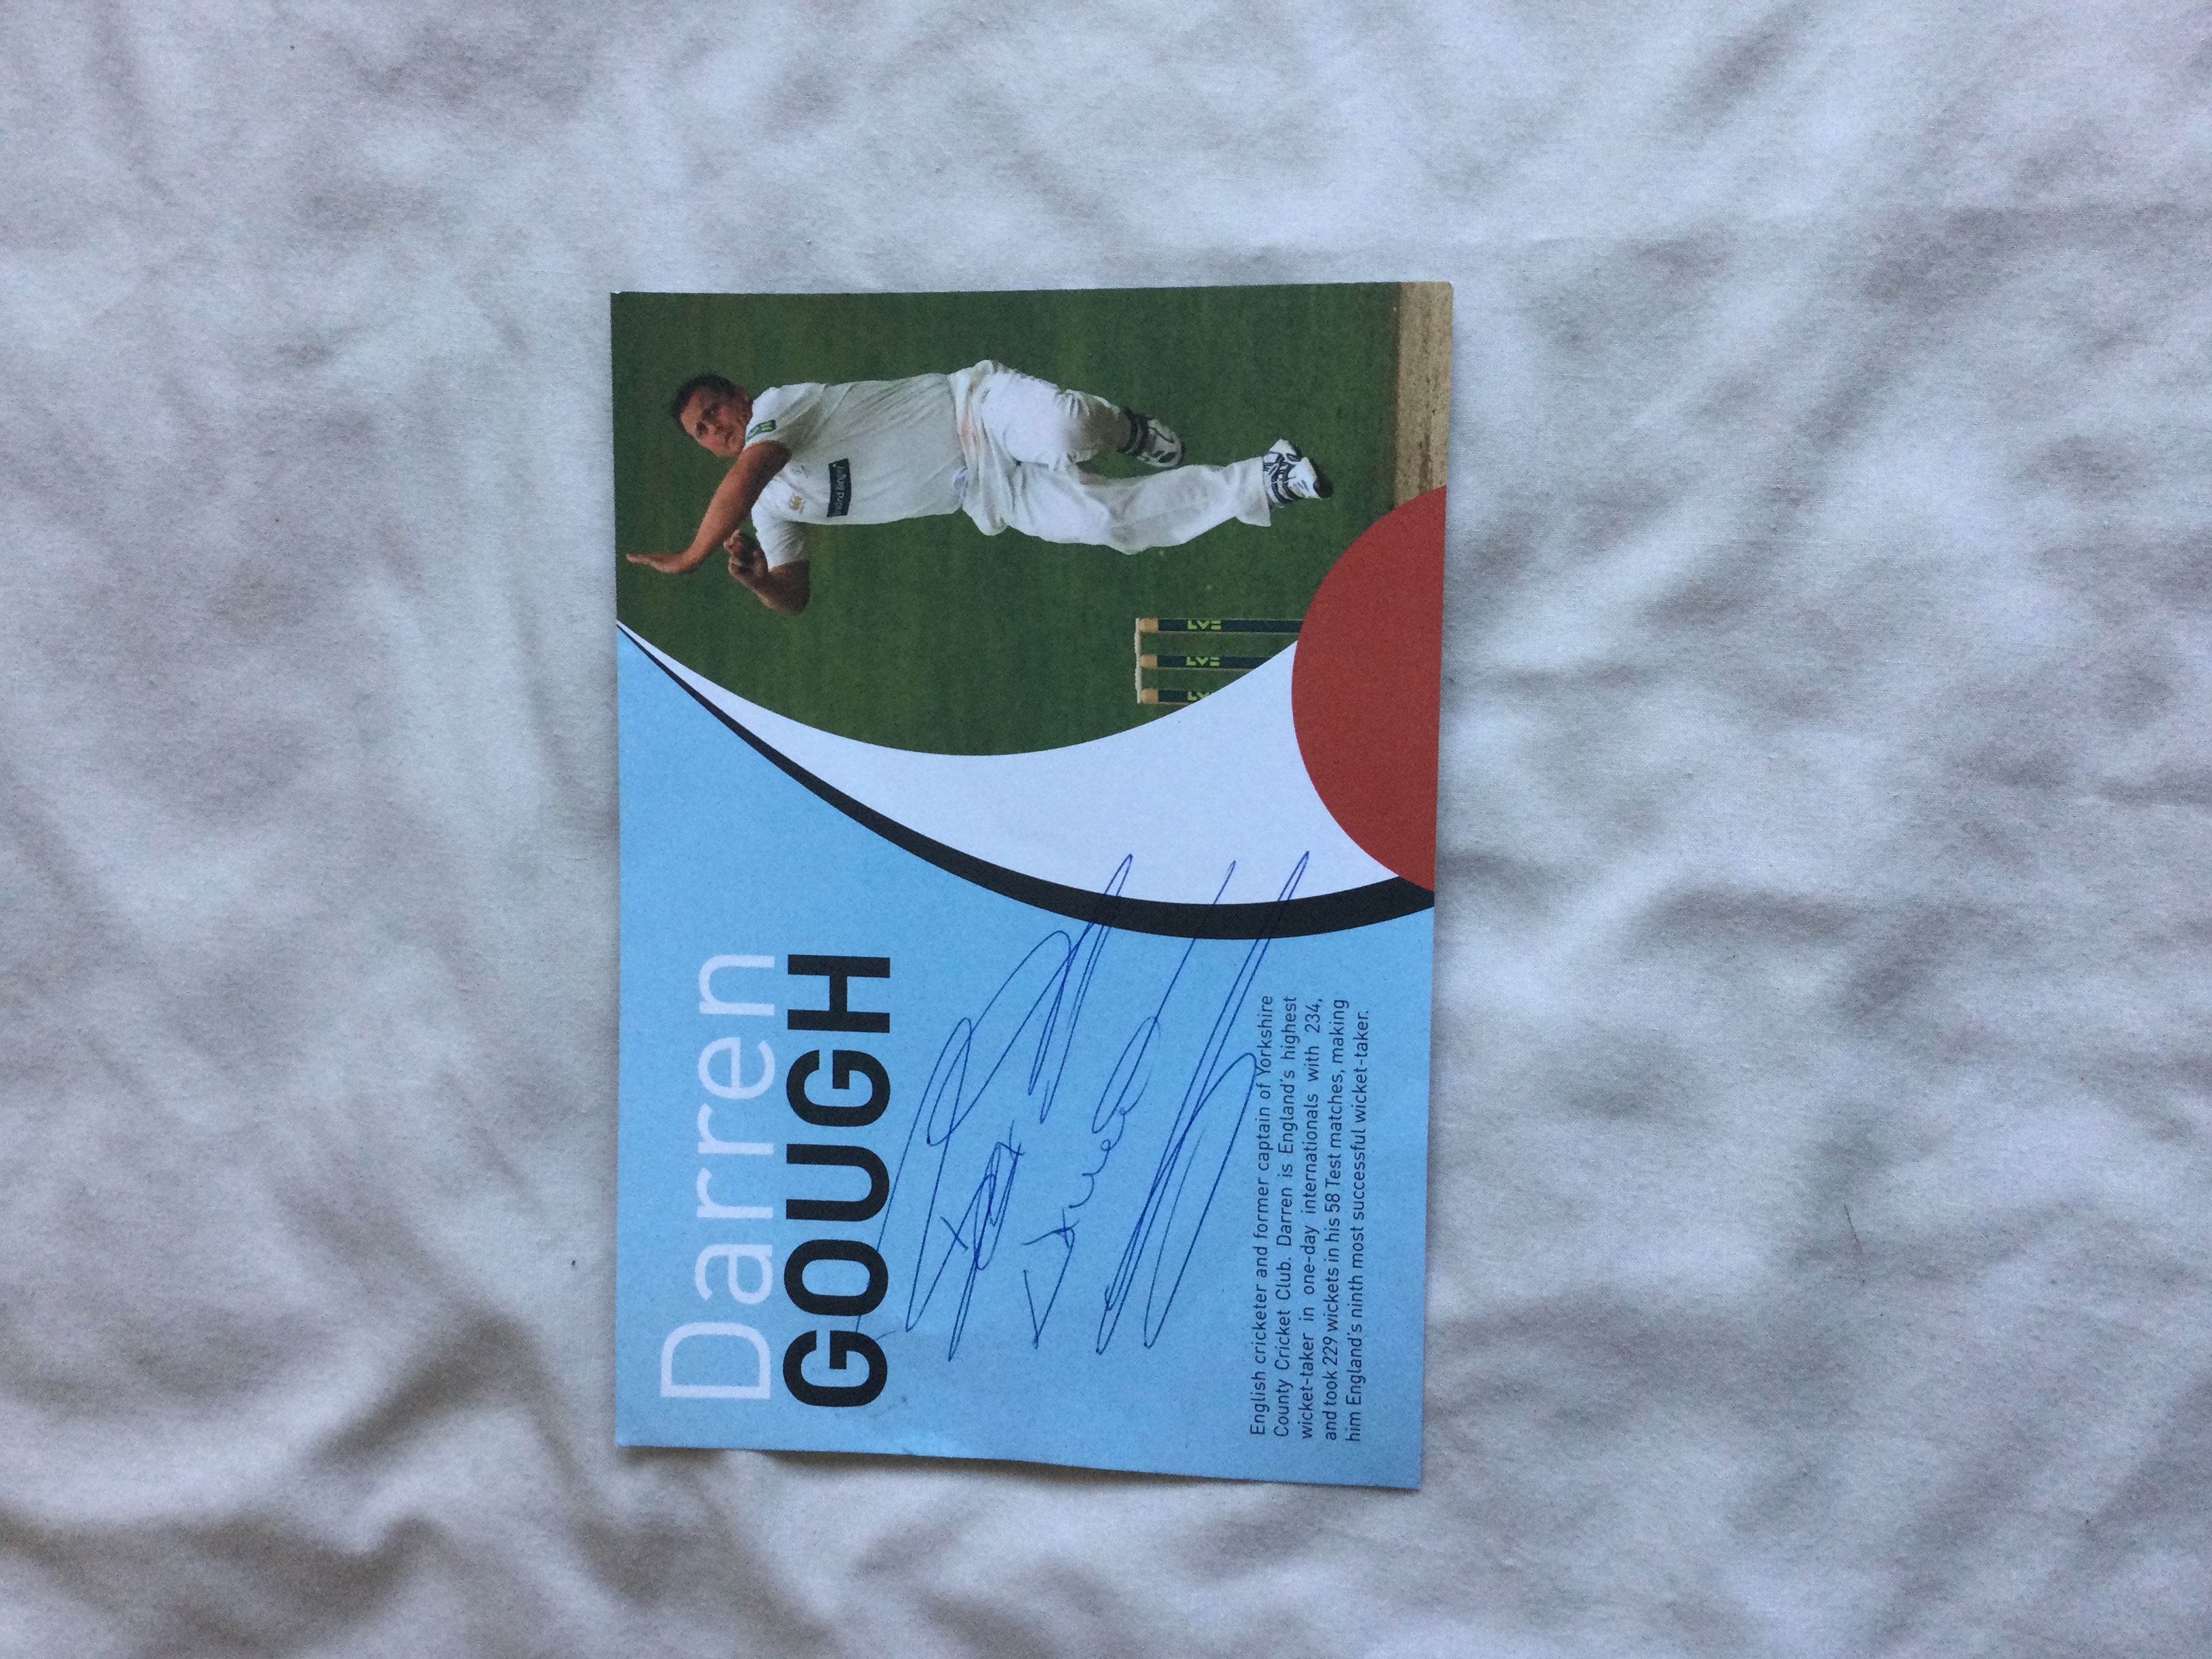 Darren Gough signed cards - Image 2 of 2